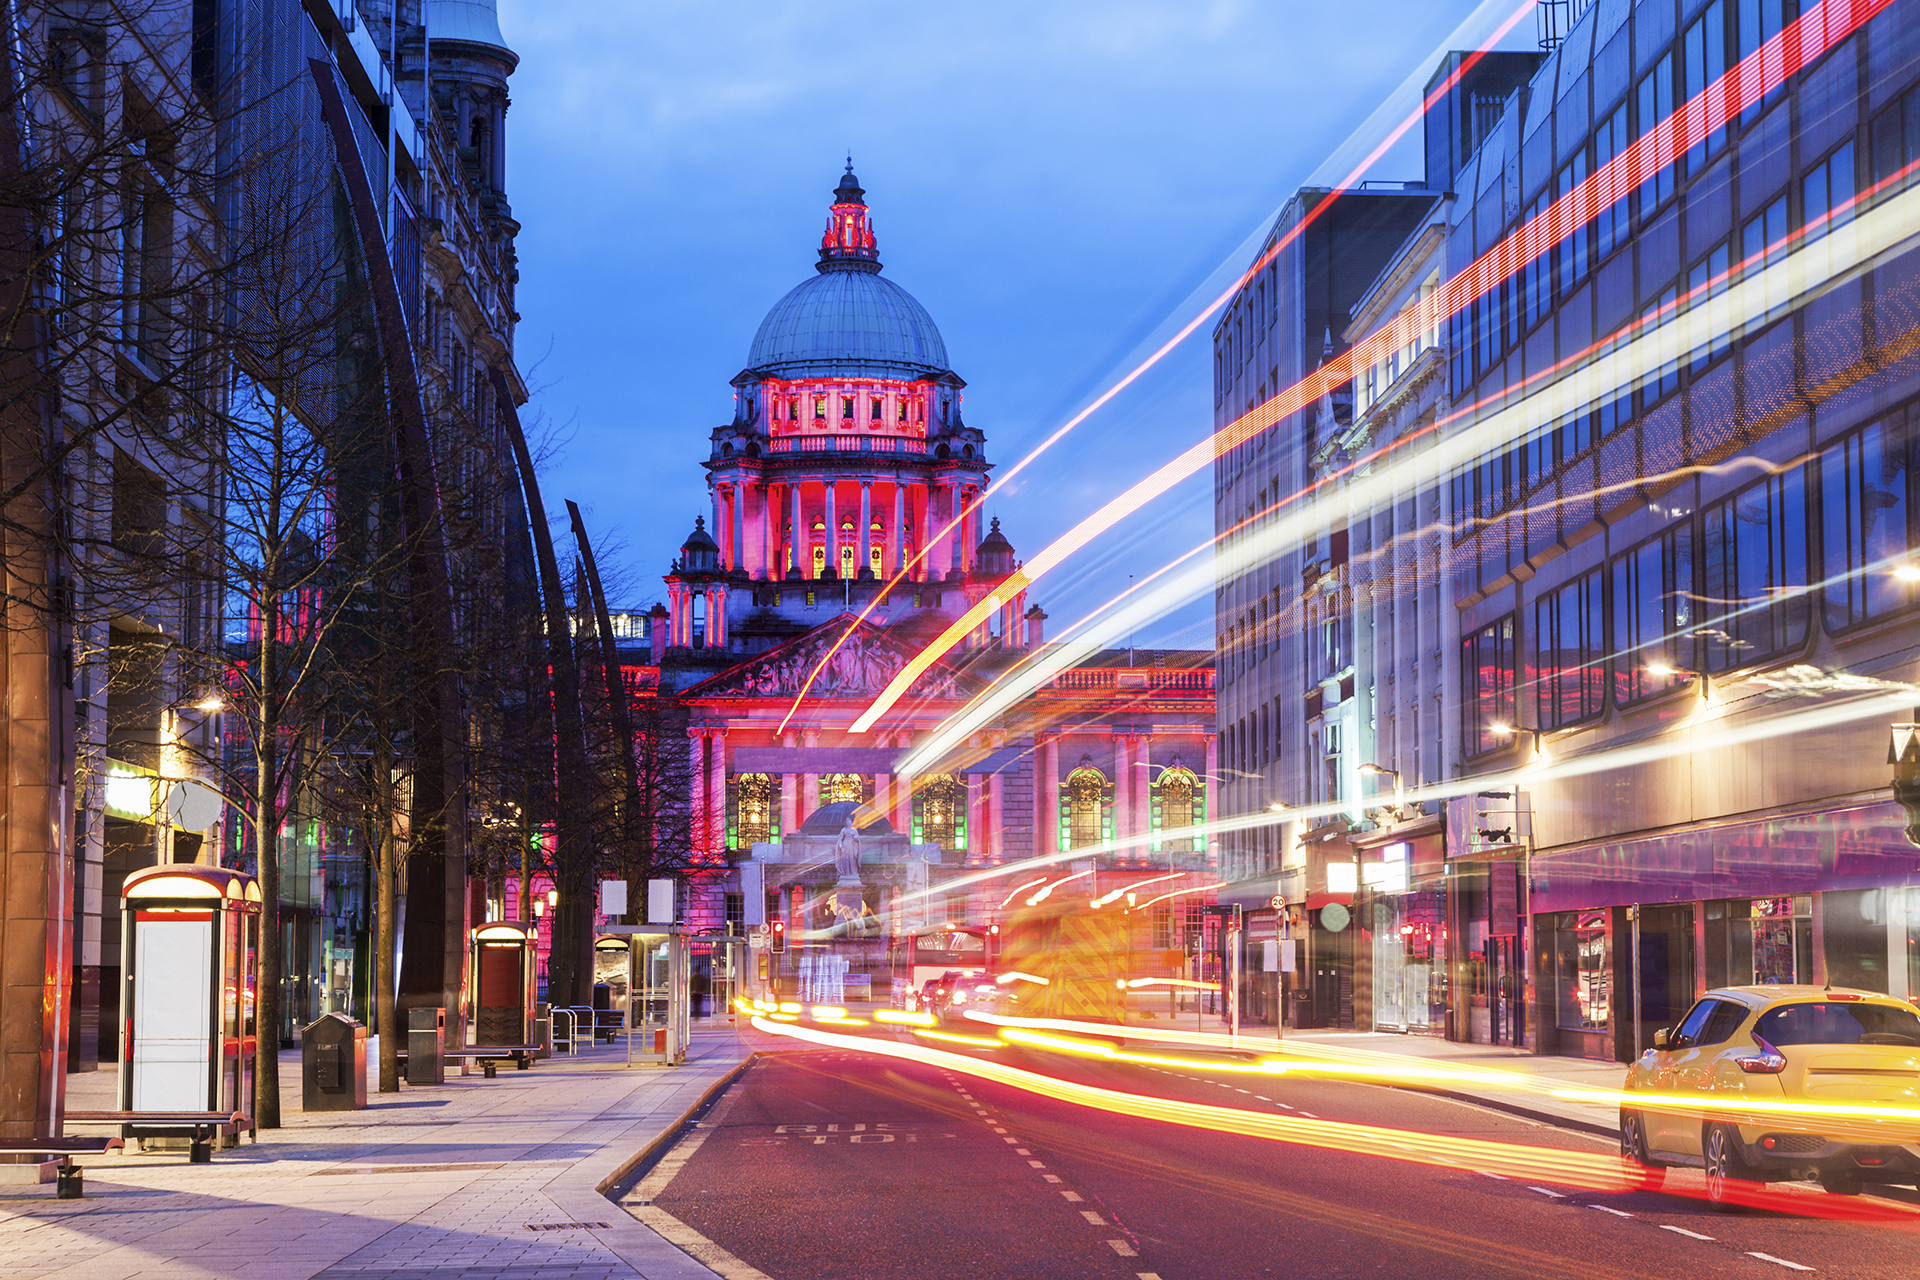 La capital de Irlanda del Norte vio caer los precios en un considerable 23,7% desde el cierre, lo que convierte a Belfast en la más barata de las cuatro capitales del Reino Unido en la lista